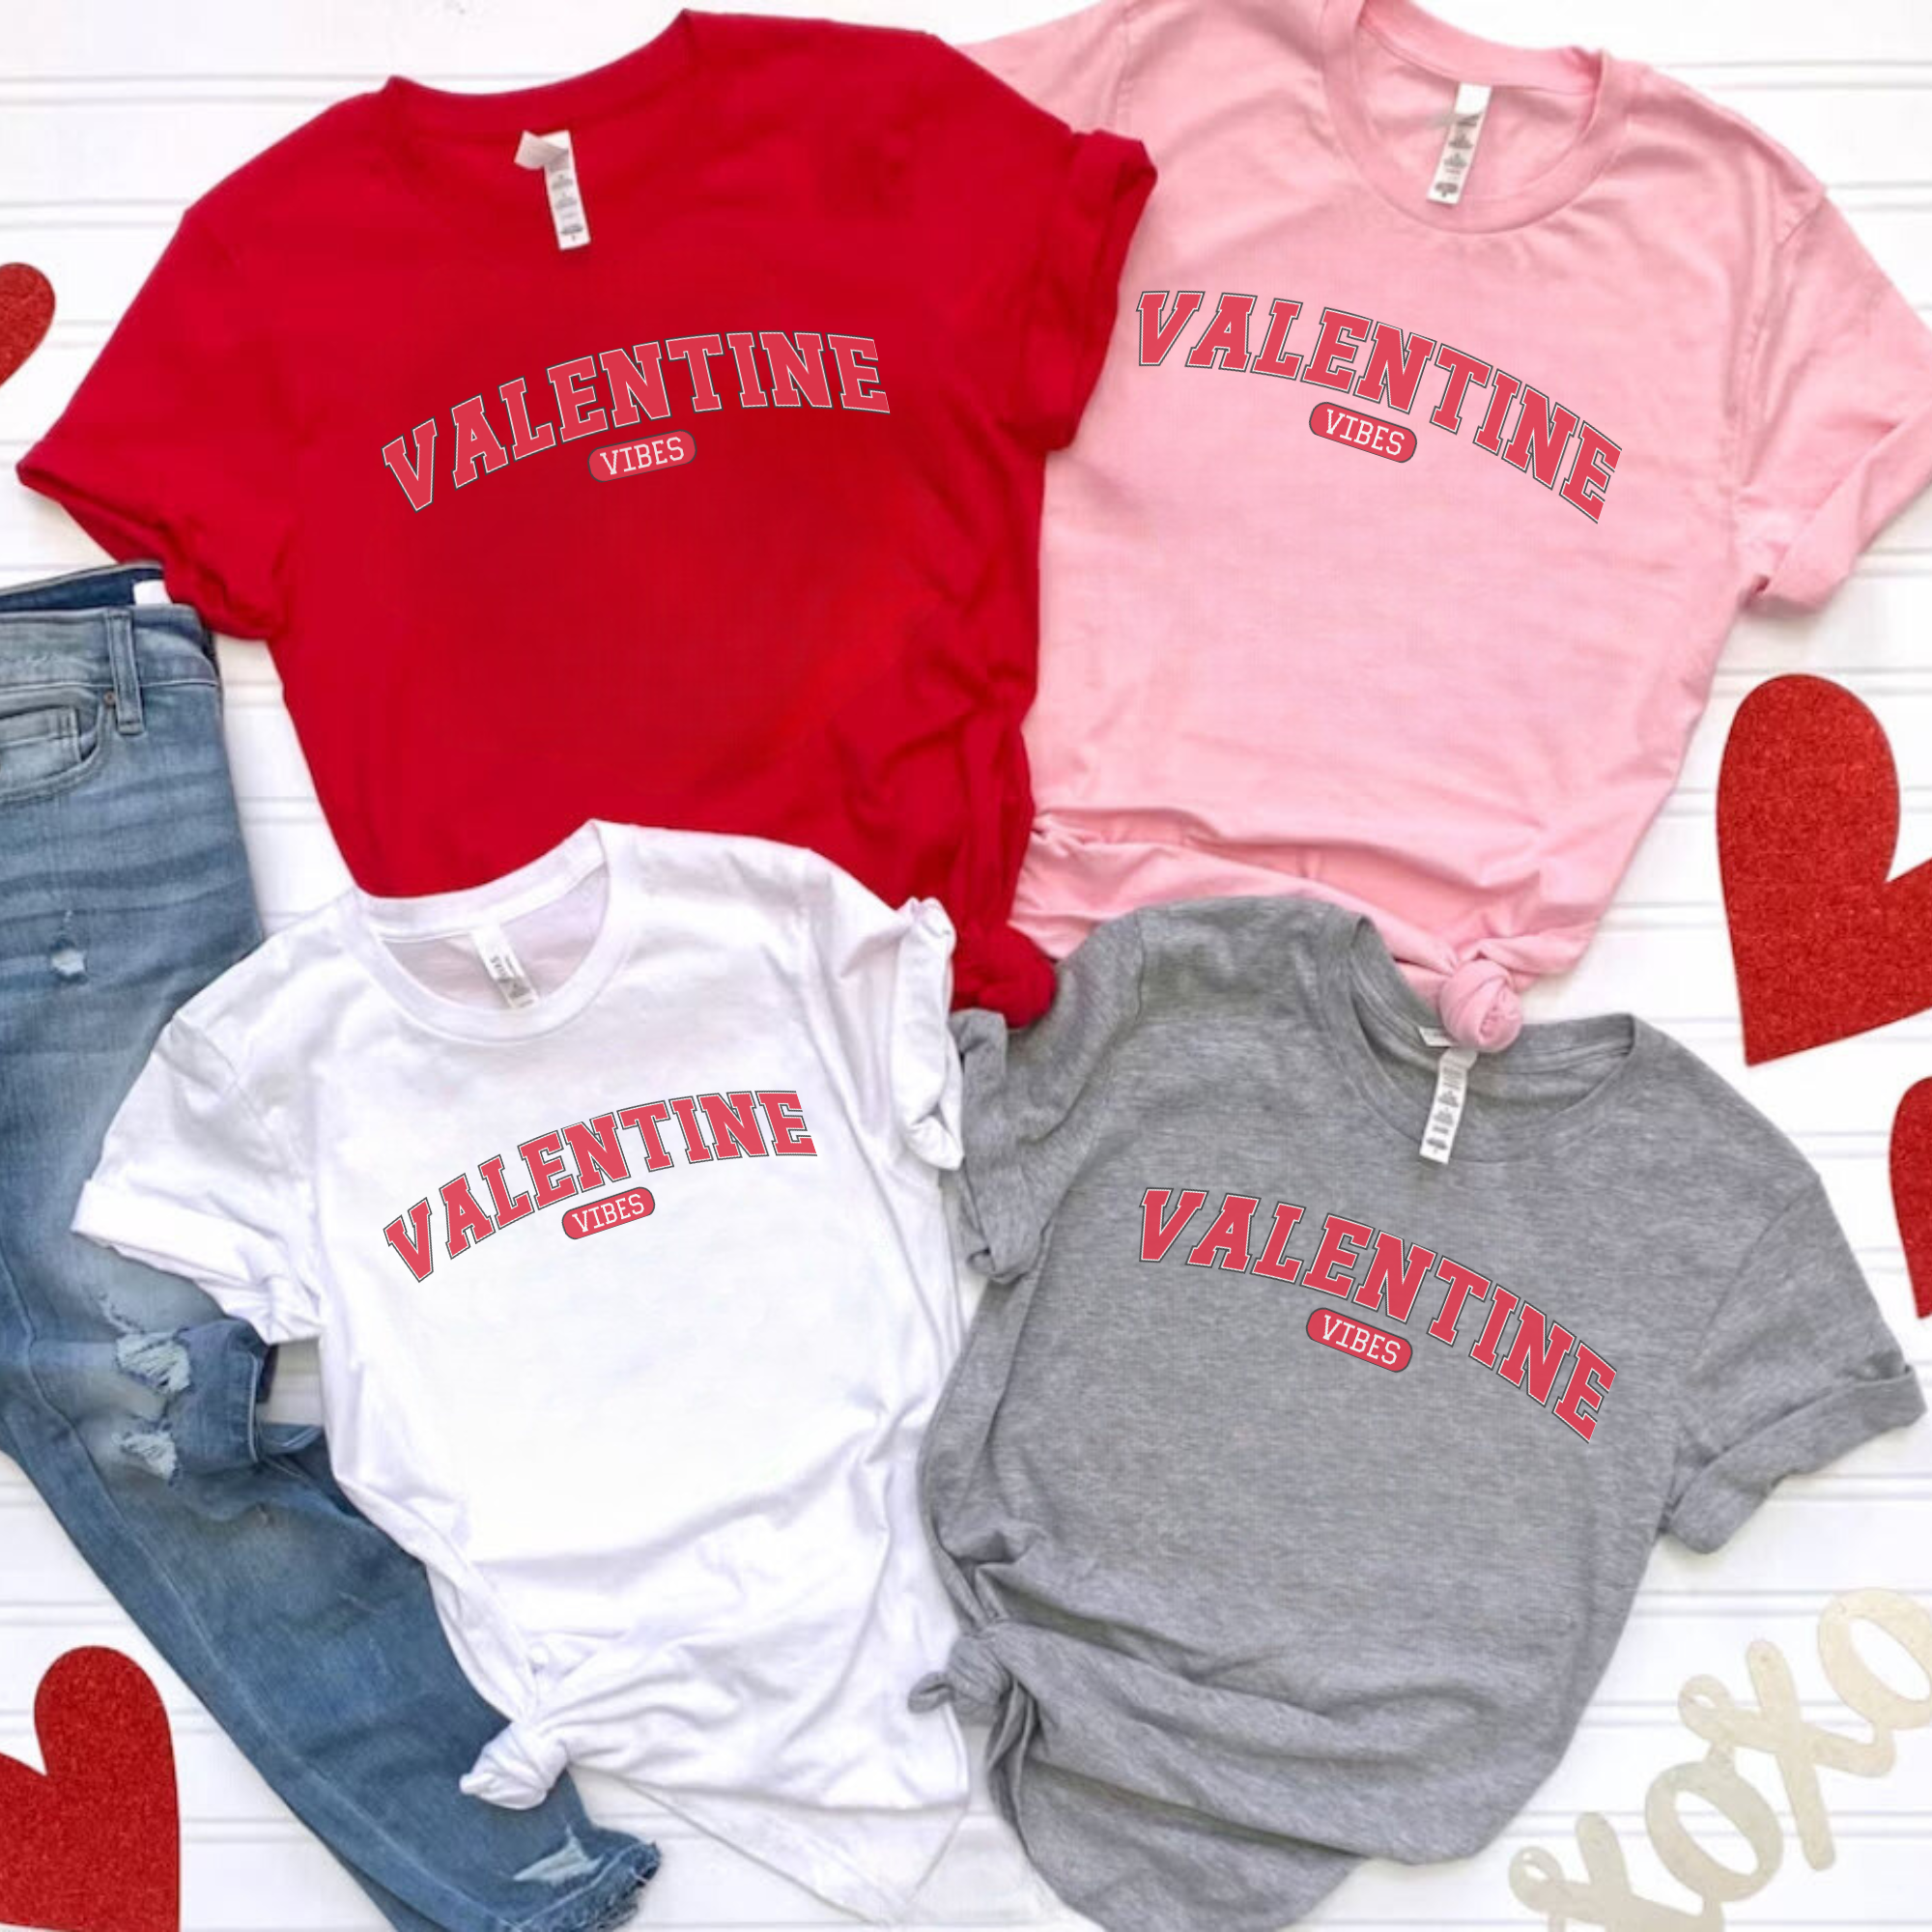 Valentine Vibes Sweatshirt - Gift For Valentine